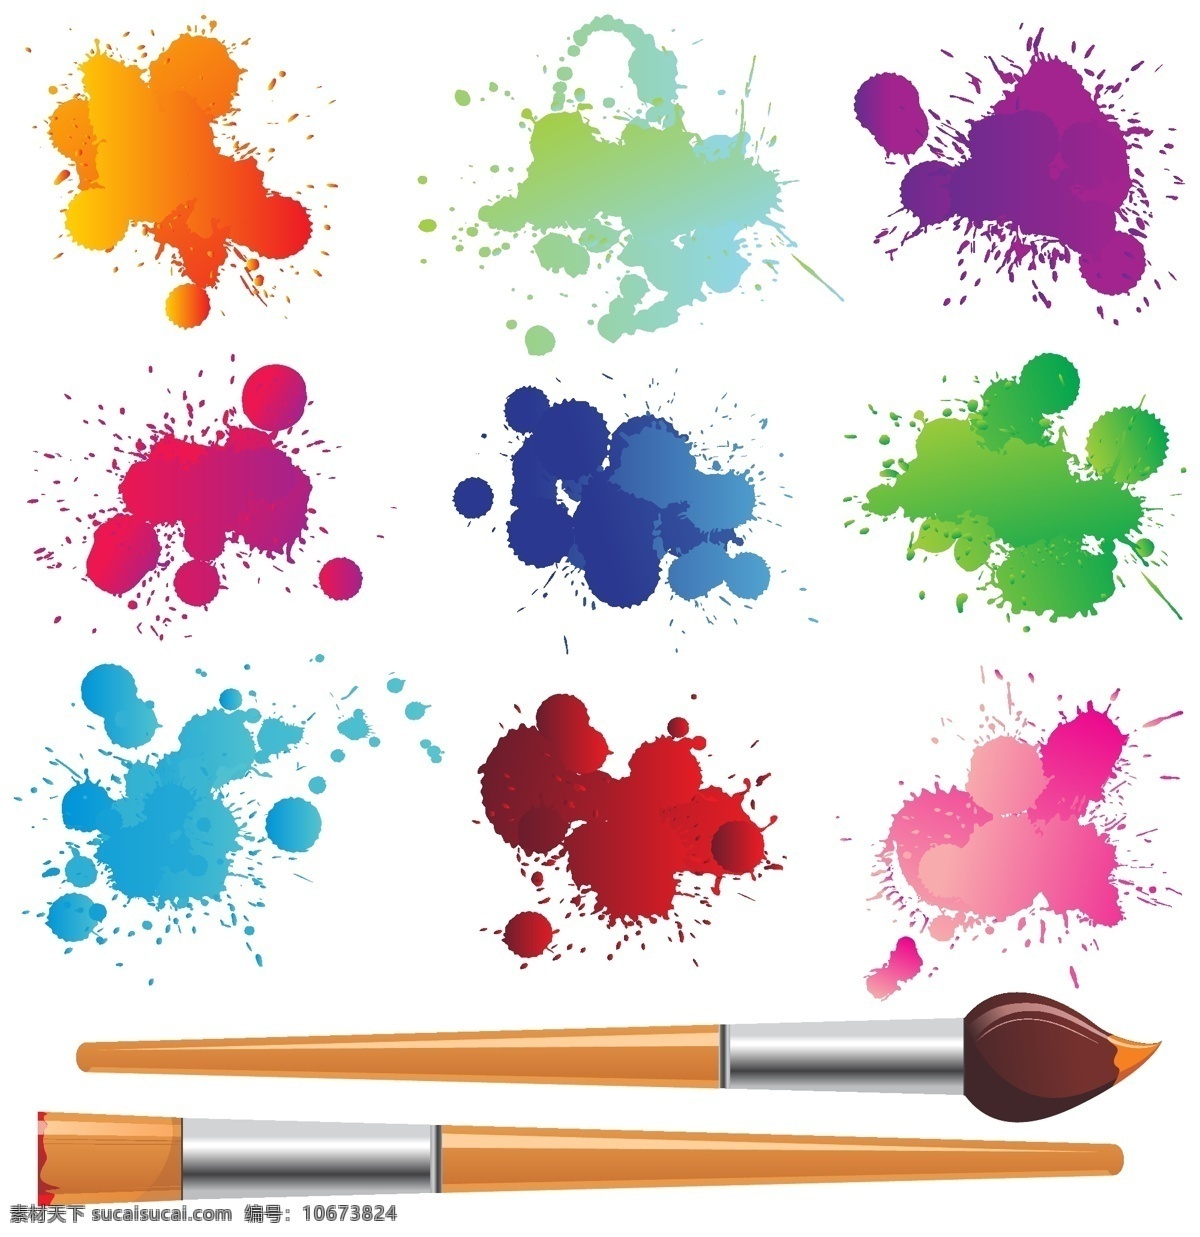 彩色画笔 水彩笔 儿童画笔 画笔 彩笔 色彩 文具 马克笔 蜡笔 儿童水彩笔 彩色铅笔 油画棒 画笔套装 绘画 绘画工具 刷子